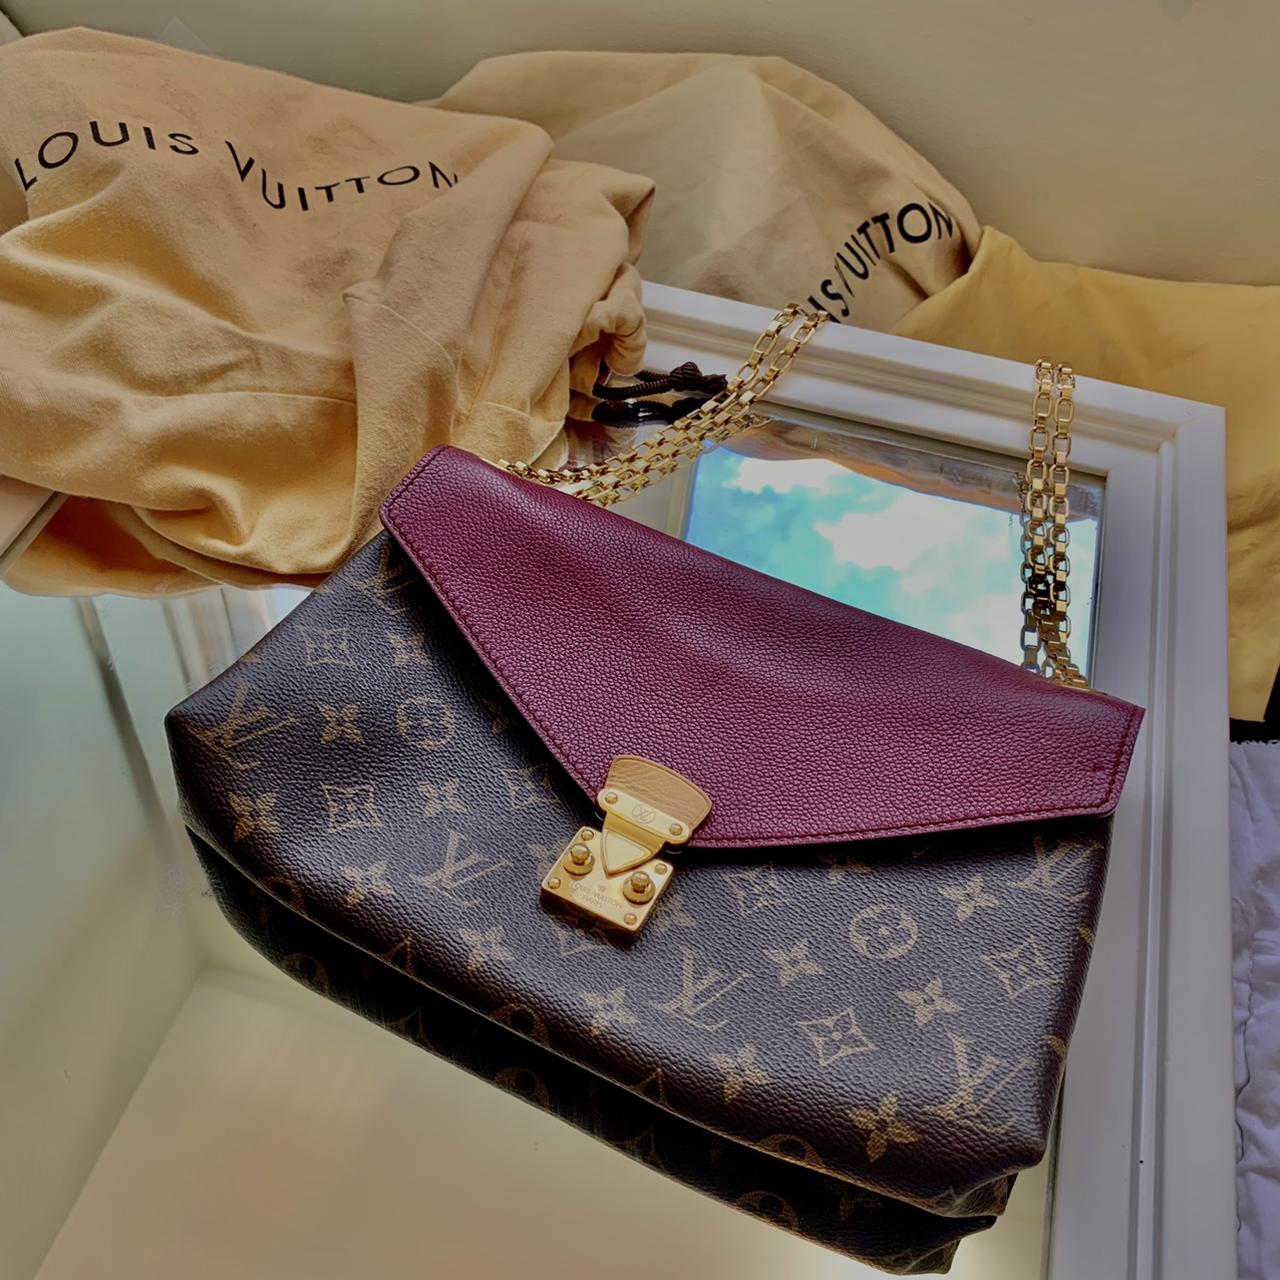 Louis Vuitton Louis Vuitton Pallas Bags & Handbags for Women